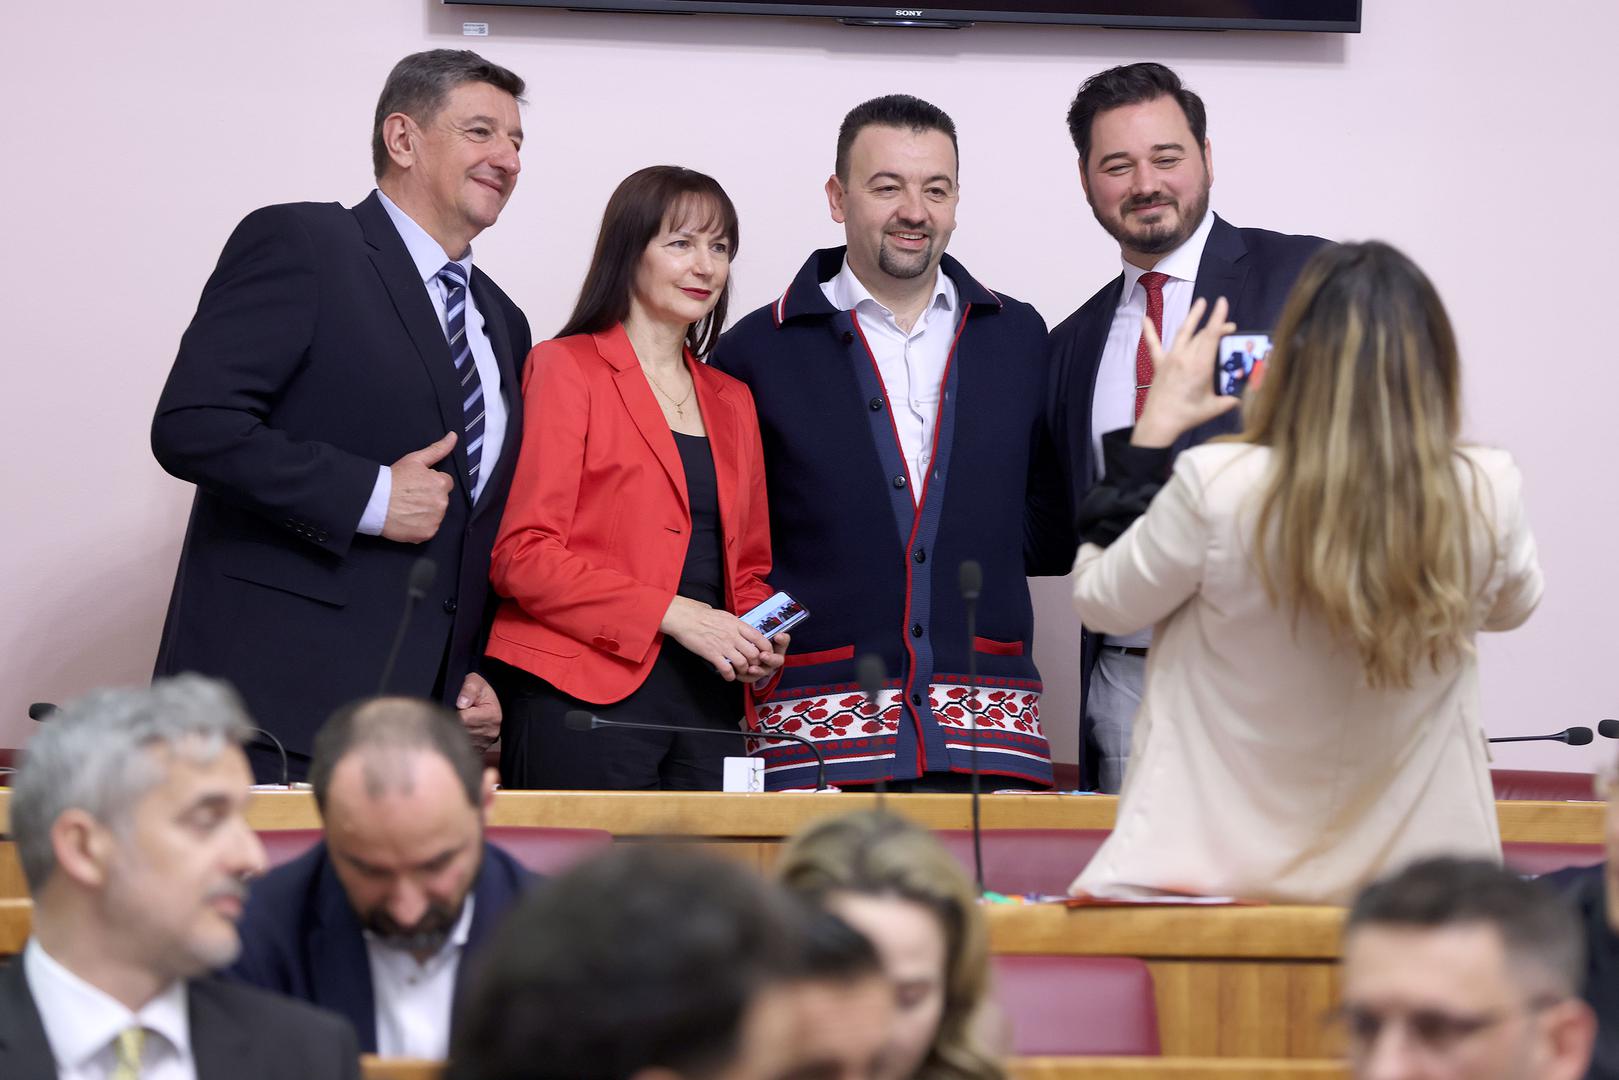 "Ako mislite da treba mijenjati Hrvatsku, glasujte za koaliciju Mosta i Suverenista“, poručio je biračima Marijan Pavliček (HS) koji je izlaganje zaključio pozdravom "Bog  i Hrvati!“